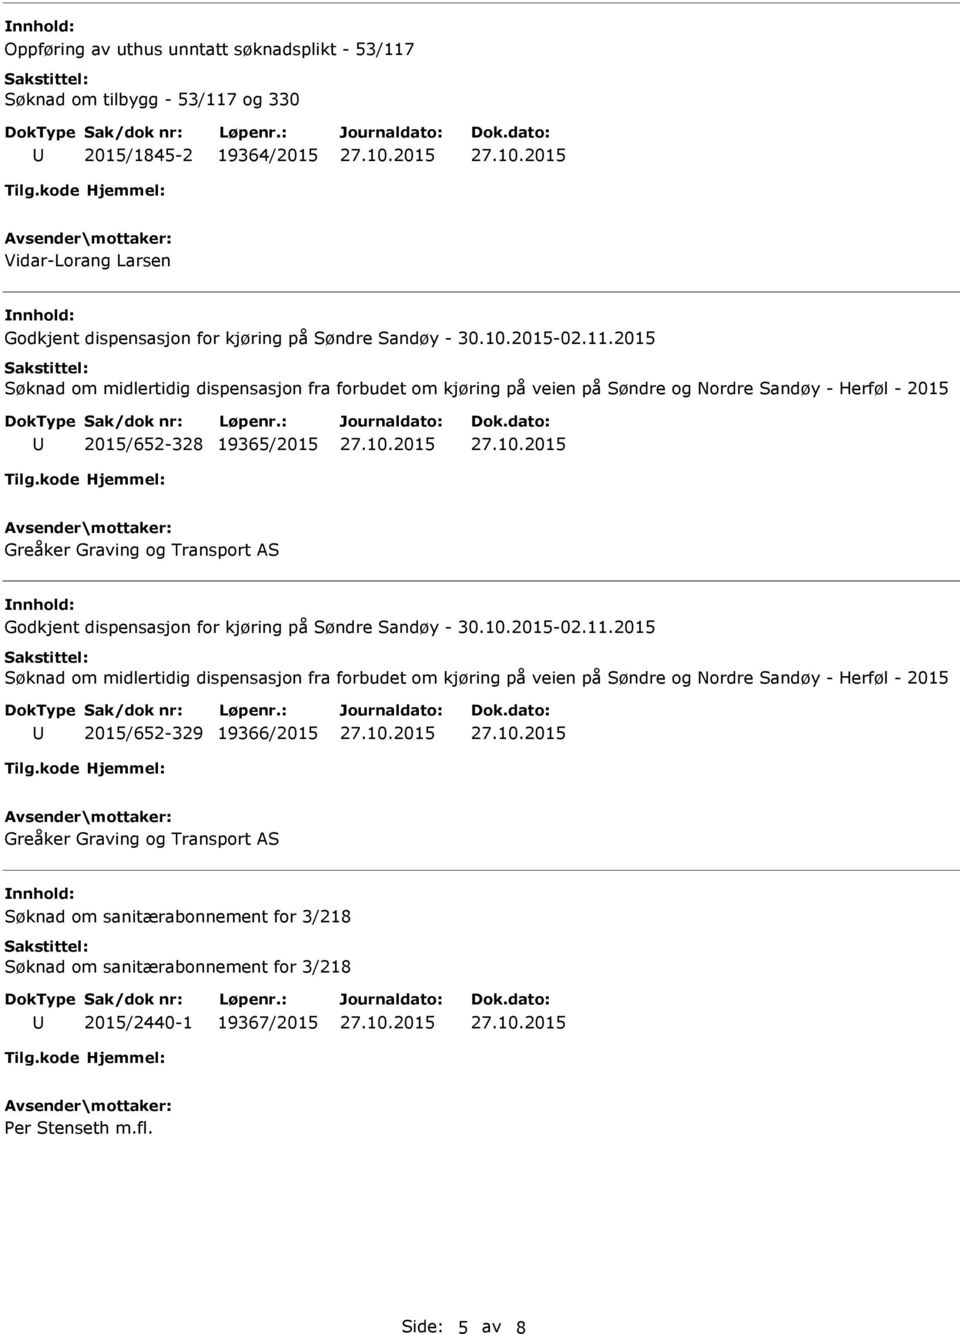 2015 Søknad om midlertidig dispensasjon fra forbudet om kjøring på veien på Søndre og Nordre Sandøy - Herføl - 2015 2015/652-328 19365/2015 Greåker Graving og Transport AS Godkjent